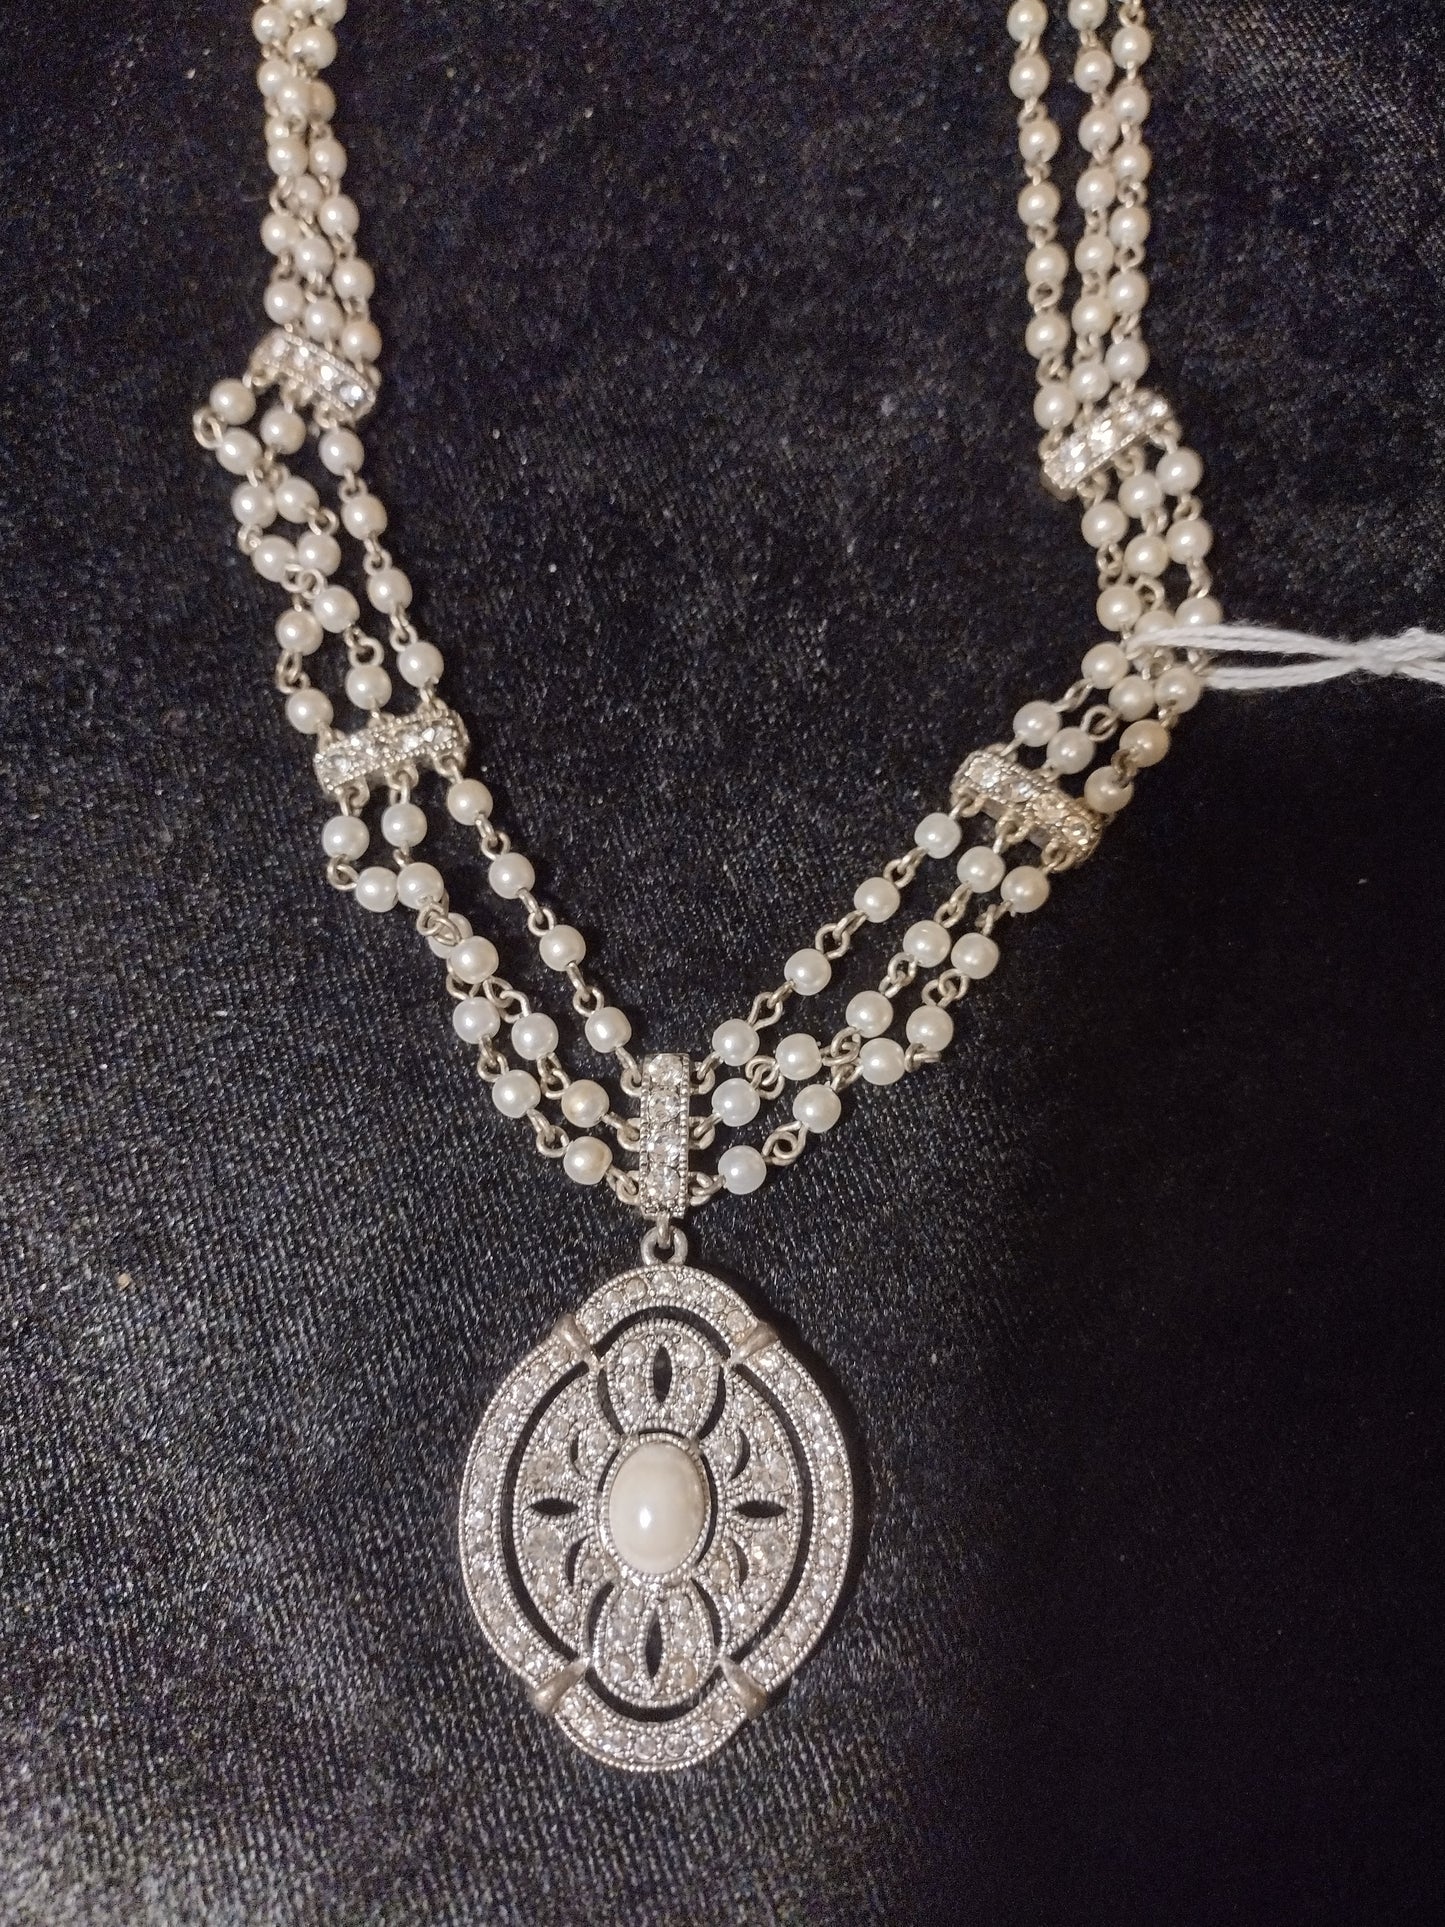 Women's pearl emblem necklace